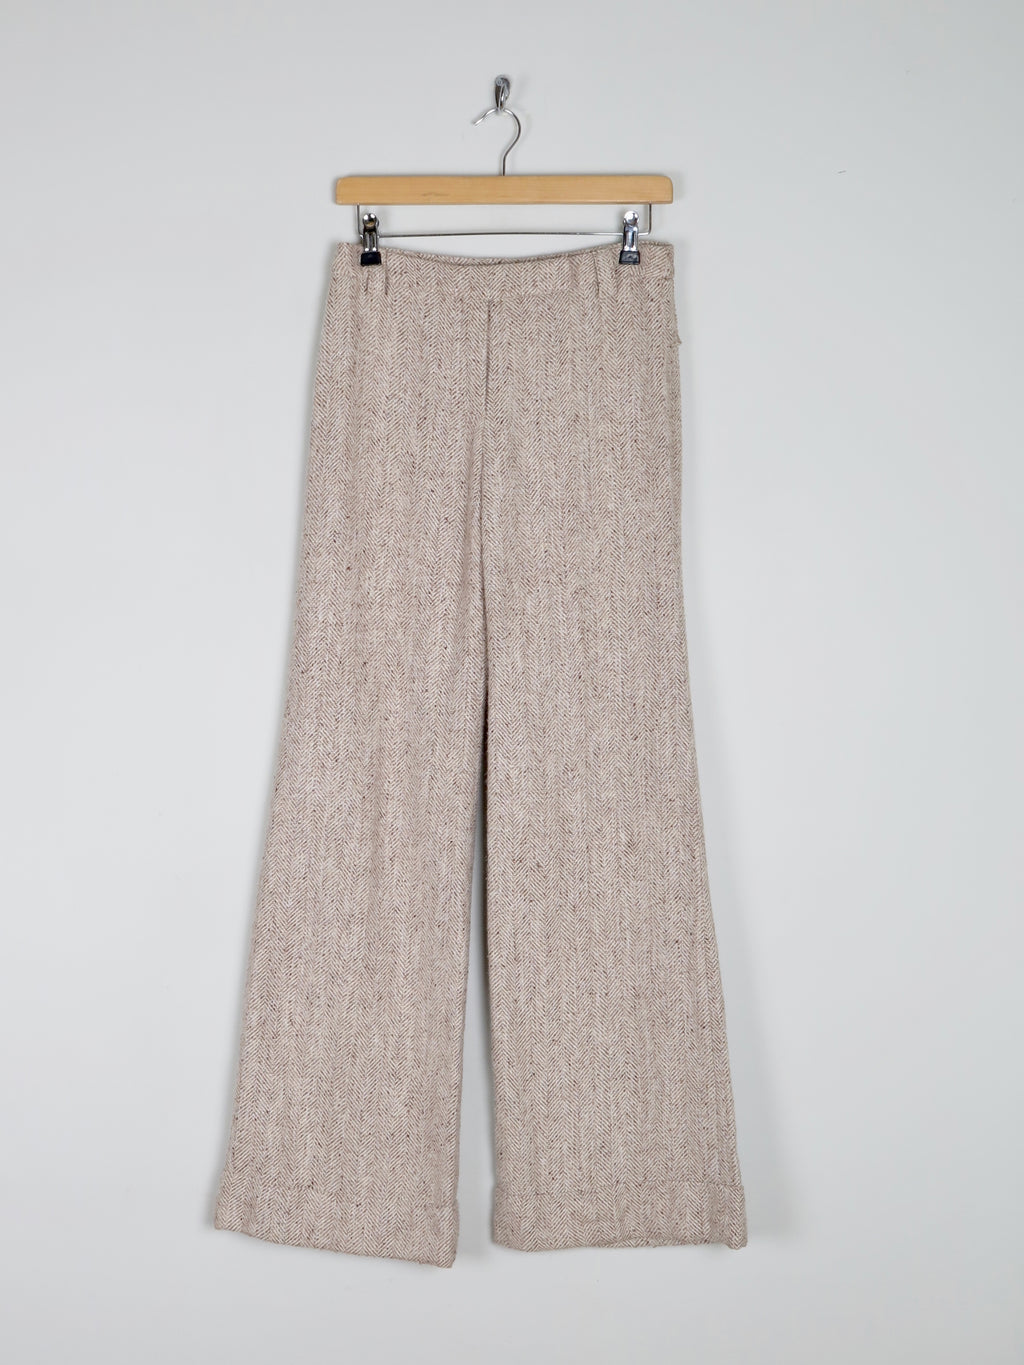 Women's Oatmeal Cream Tweed Flared Trousers 8/10 29"